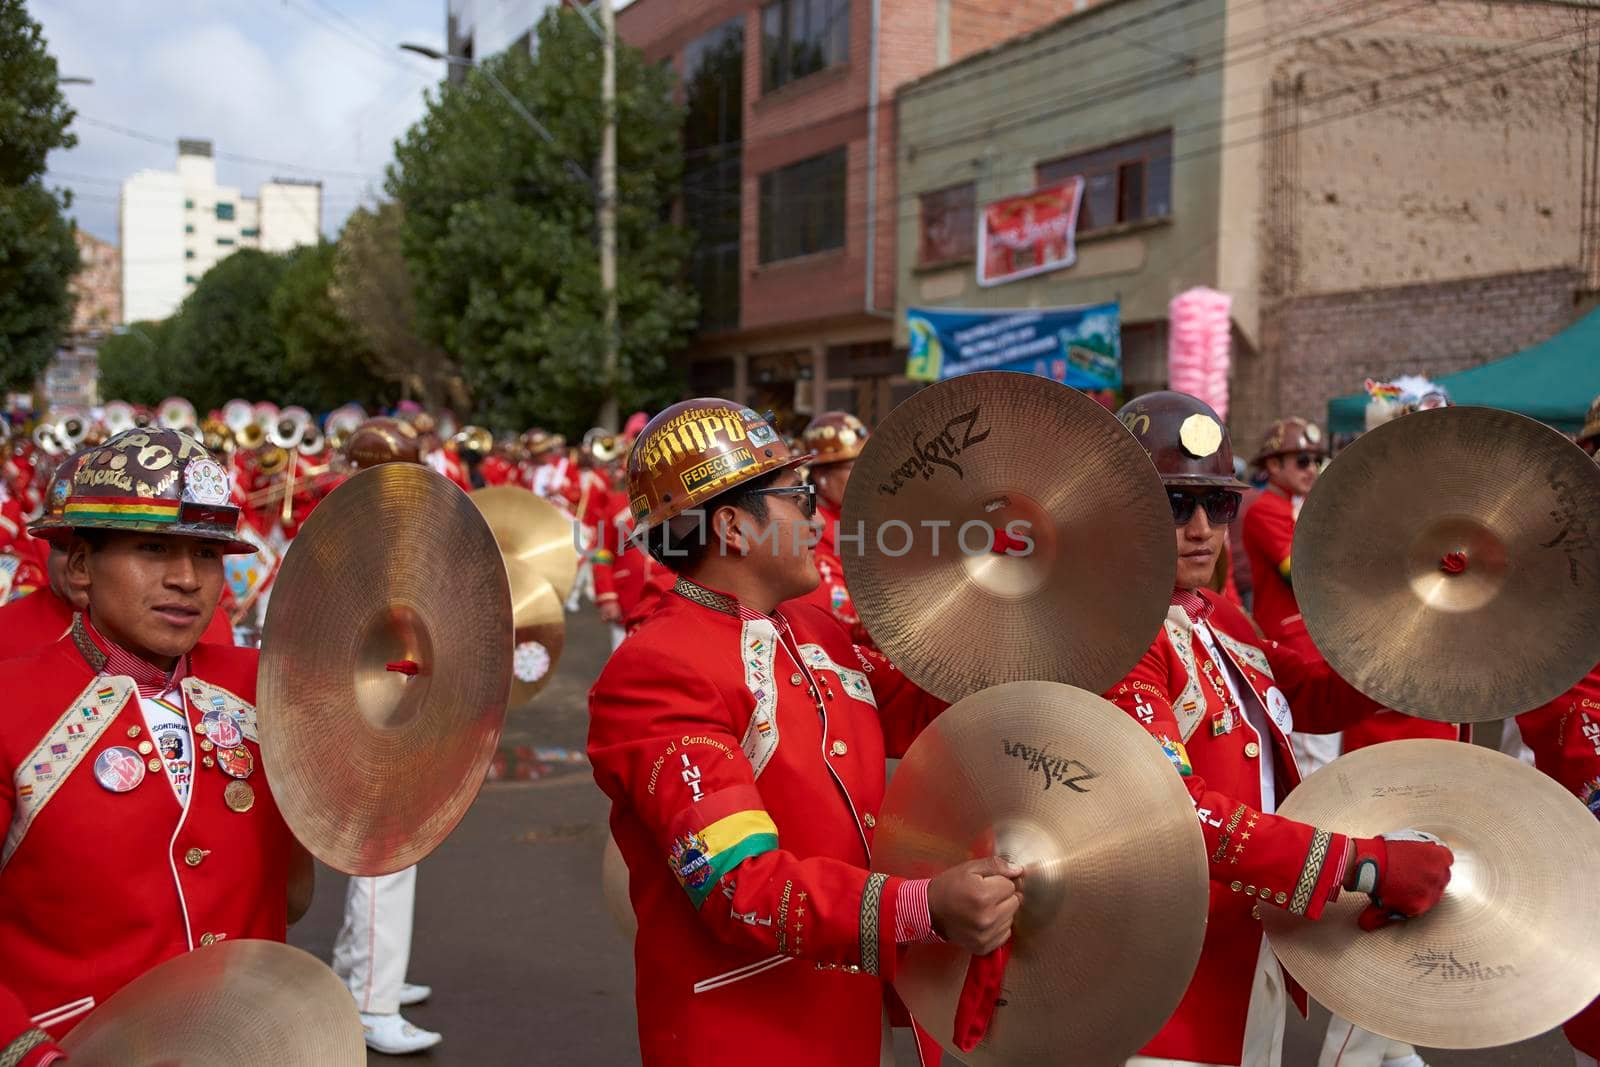 Carnival Band by JeremyRichards